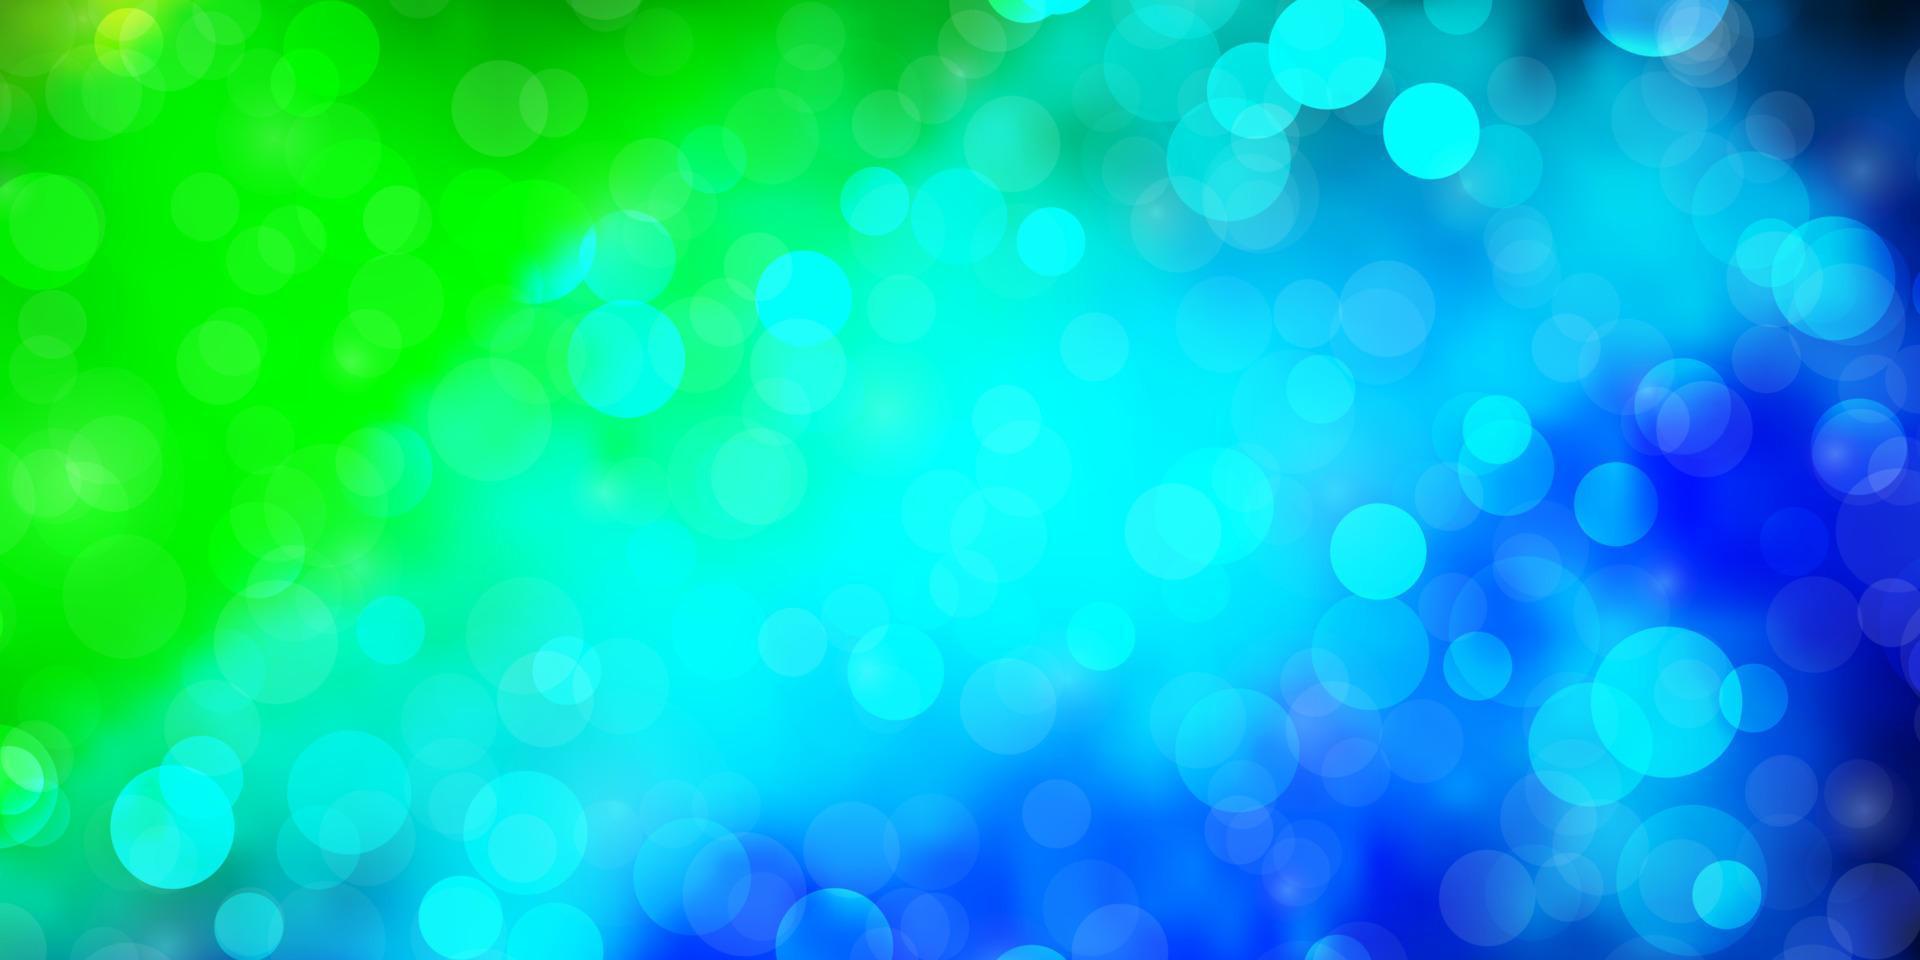 ljusblå, grön vektor bakgrund med cirklar.